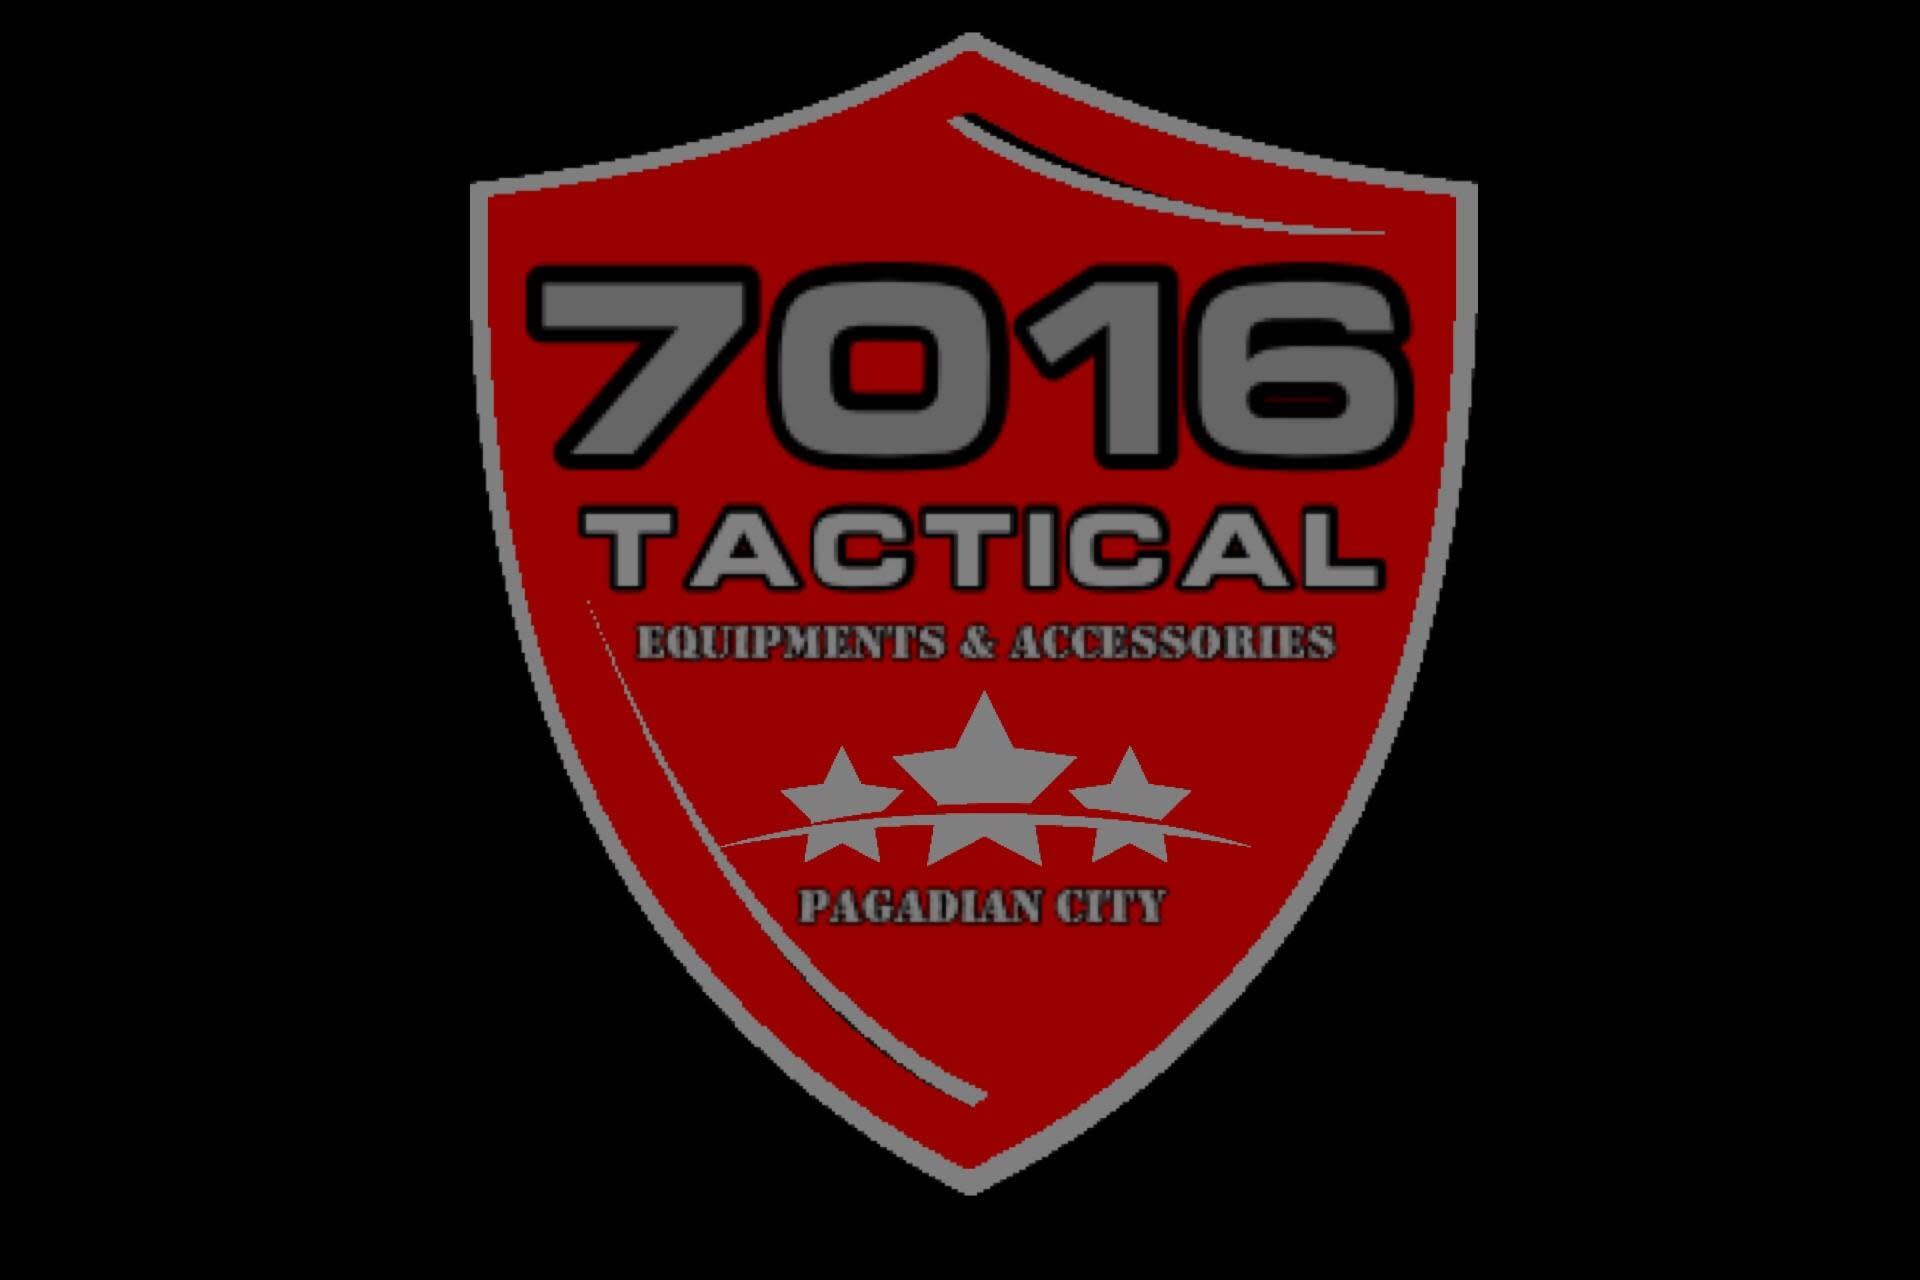 7016 Tactical